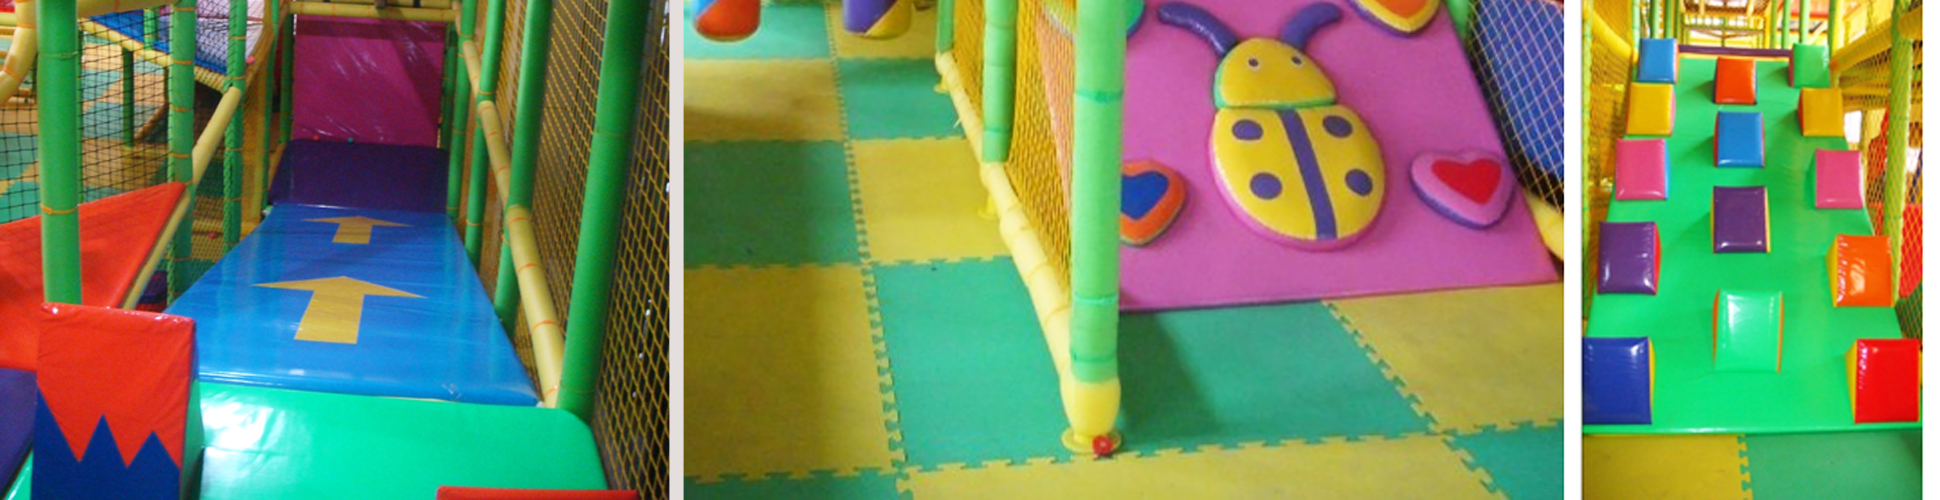 dětské herní centrum